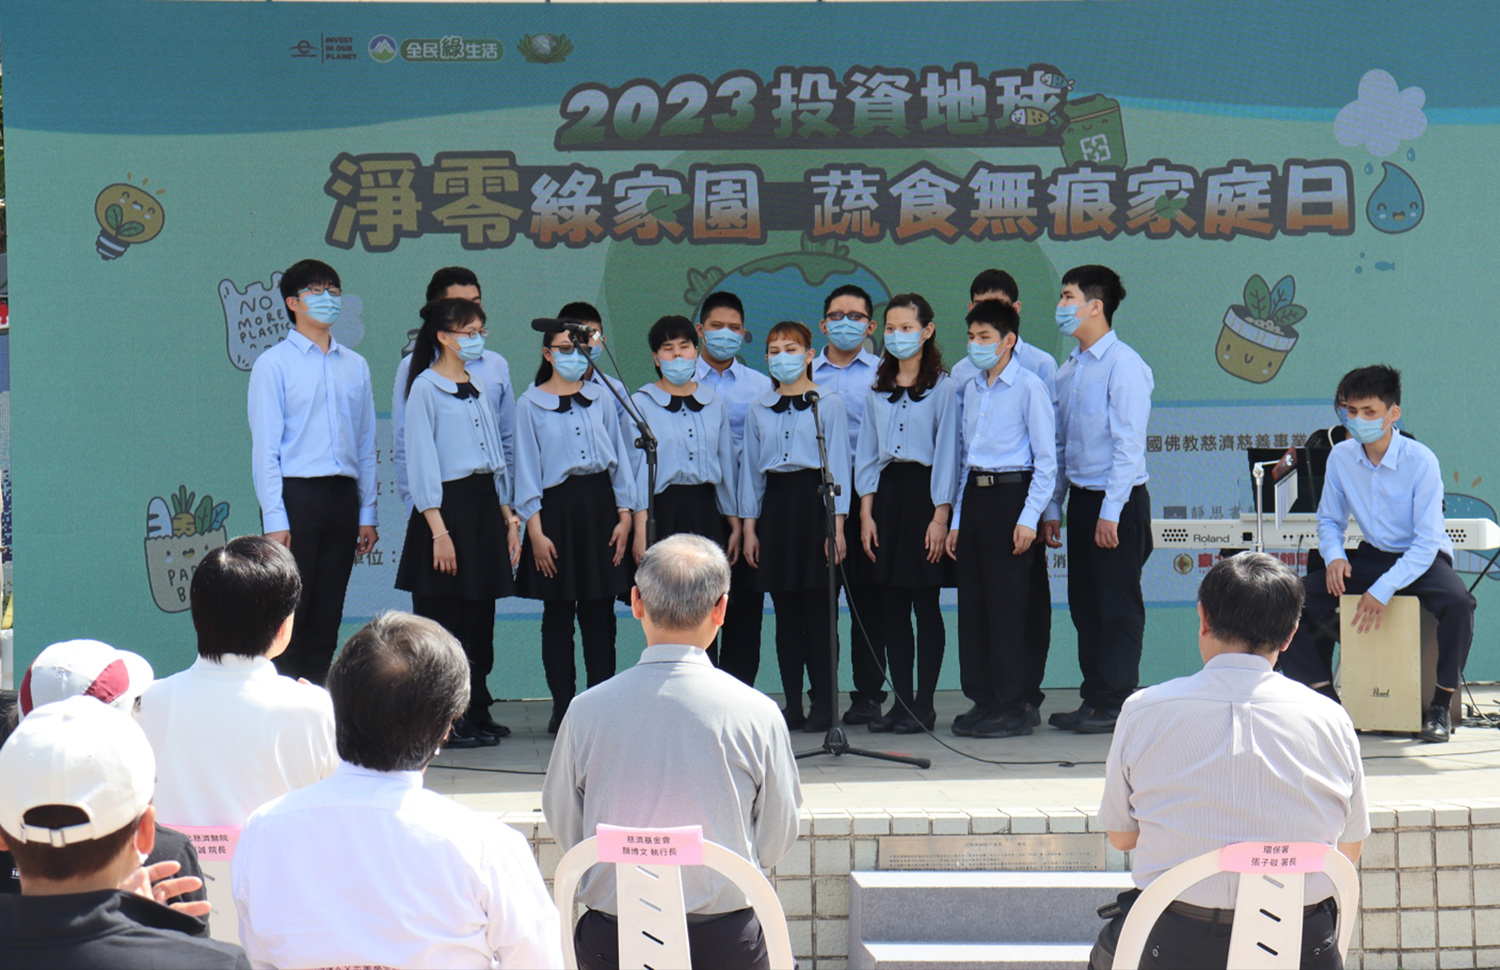 活動由臺北市立啟明學校啟鳴之聲合唱團以「快樂天堂」揭開序幕。